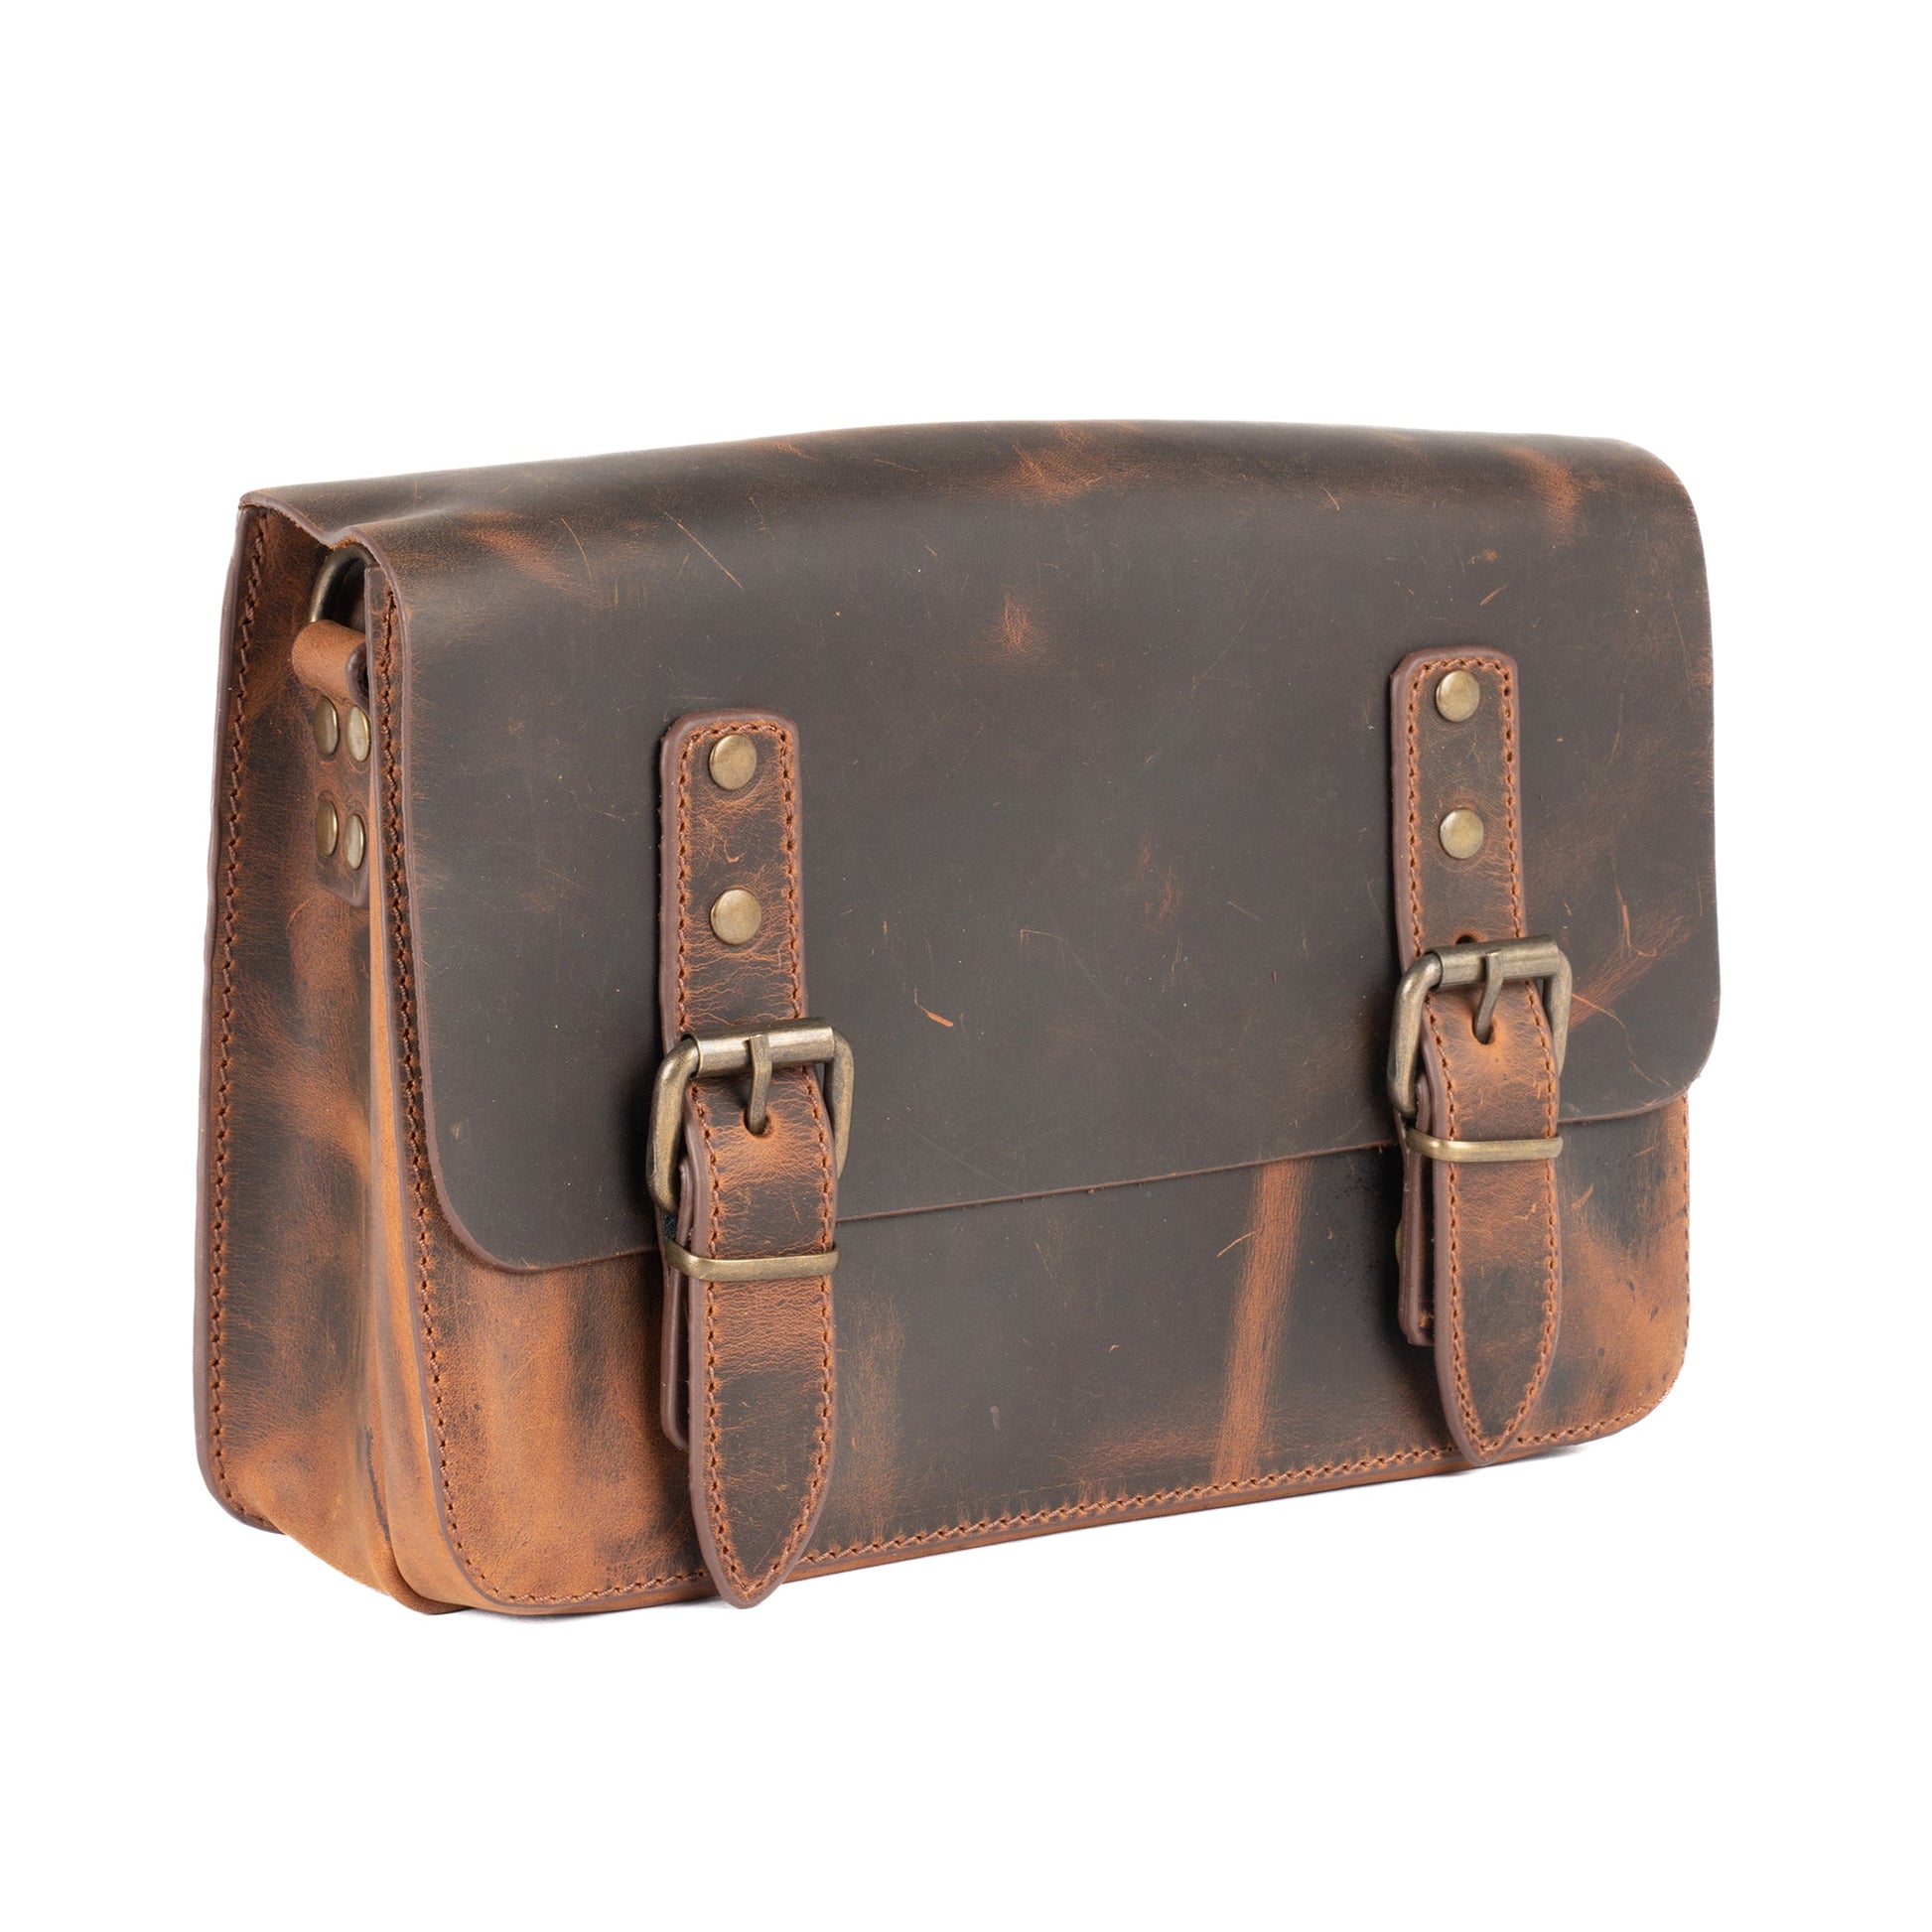 Ocean Ray Leather Clutche Bag - Accessories Zengoda Shop online from Artisan Brands